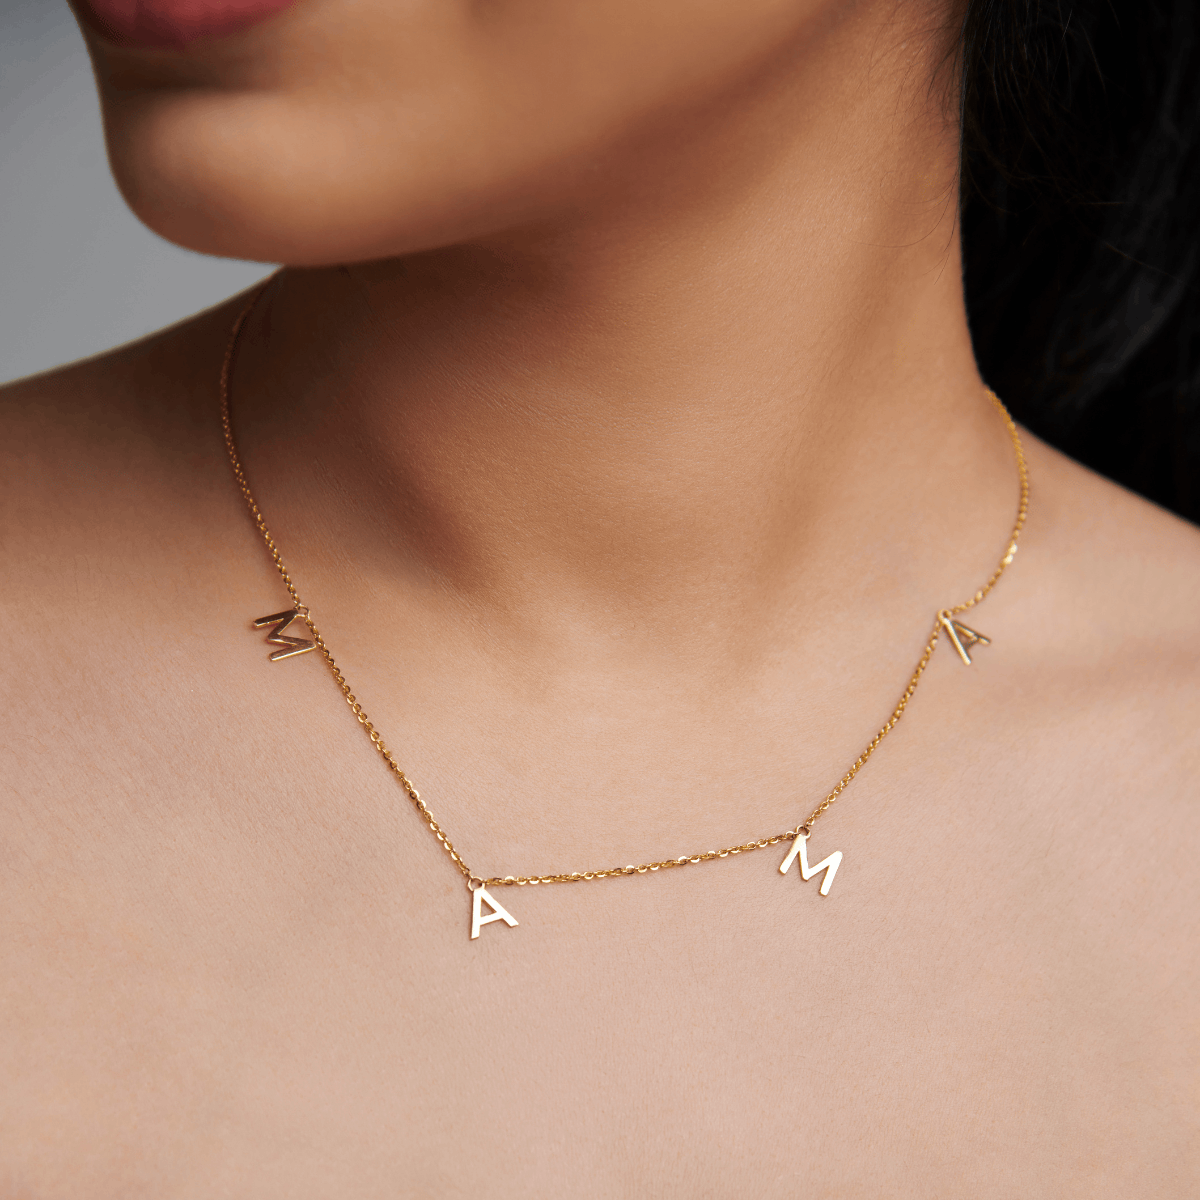 JeenMata MOM Diamond Pendant Necklace in 18K White Gold over Silver -  Walmart.com